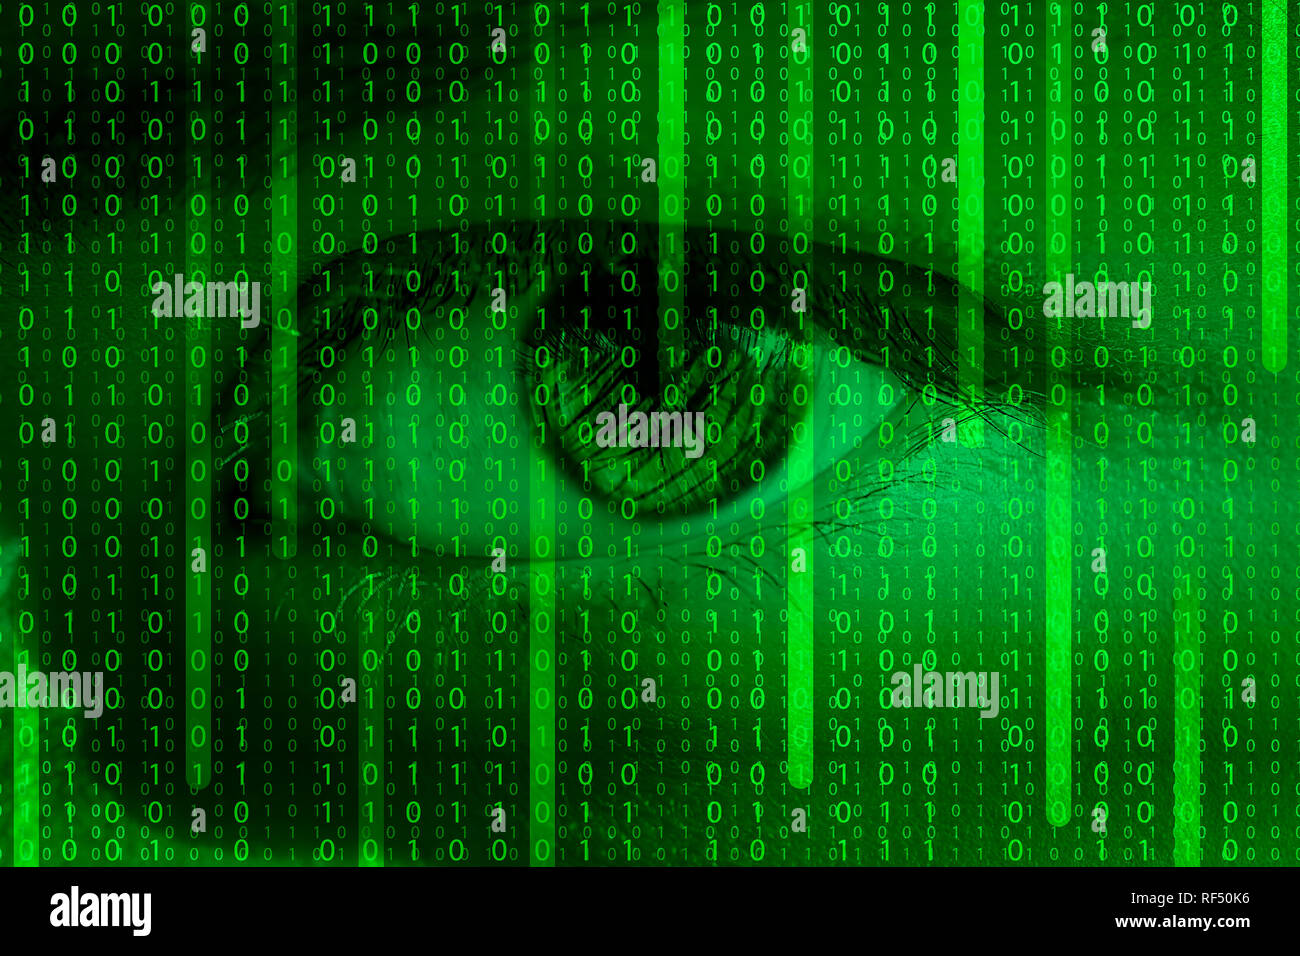 Menschliche Auge und Matrix Muster mit binären Code-futuristische Abbildung. Konzept Hintergrund für High Tech, Datensicherheit oder der künstlichen Intelligenz de Stockfoto